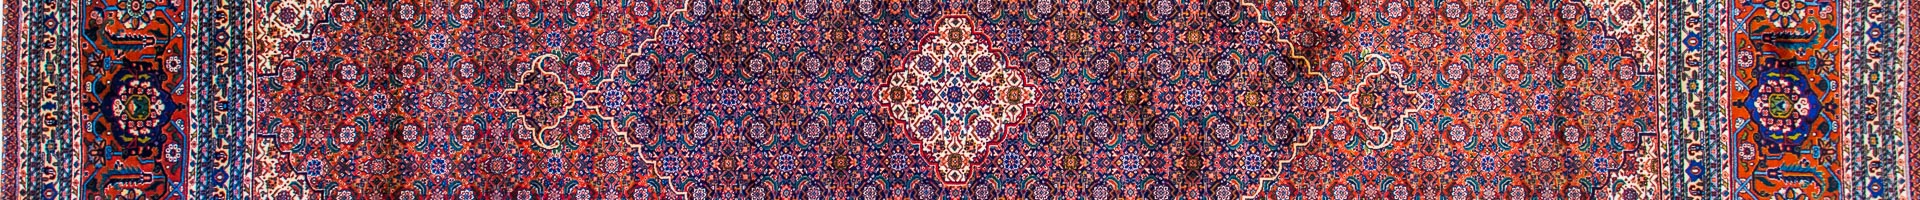 Mahi Persian Carpet Rug N1Carpet Montreal Canada Tapis Persan